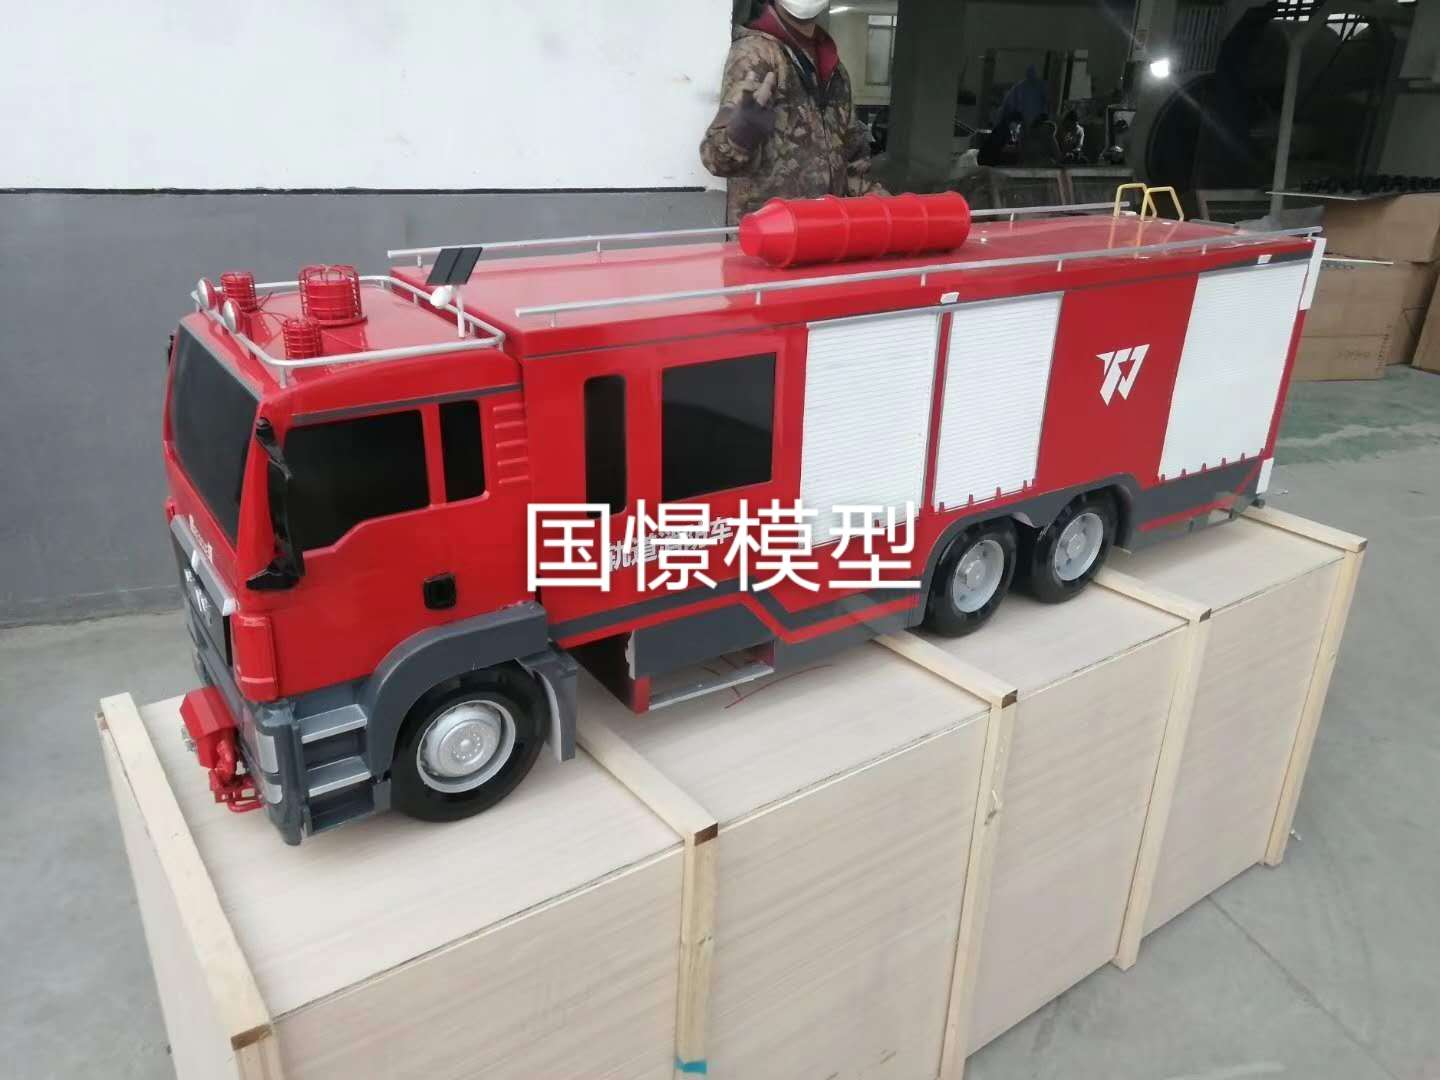 清涧县车辆模型